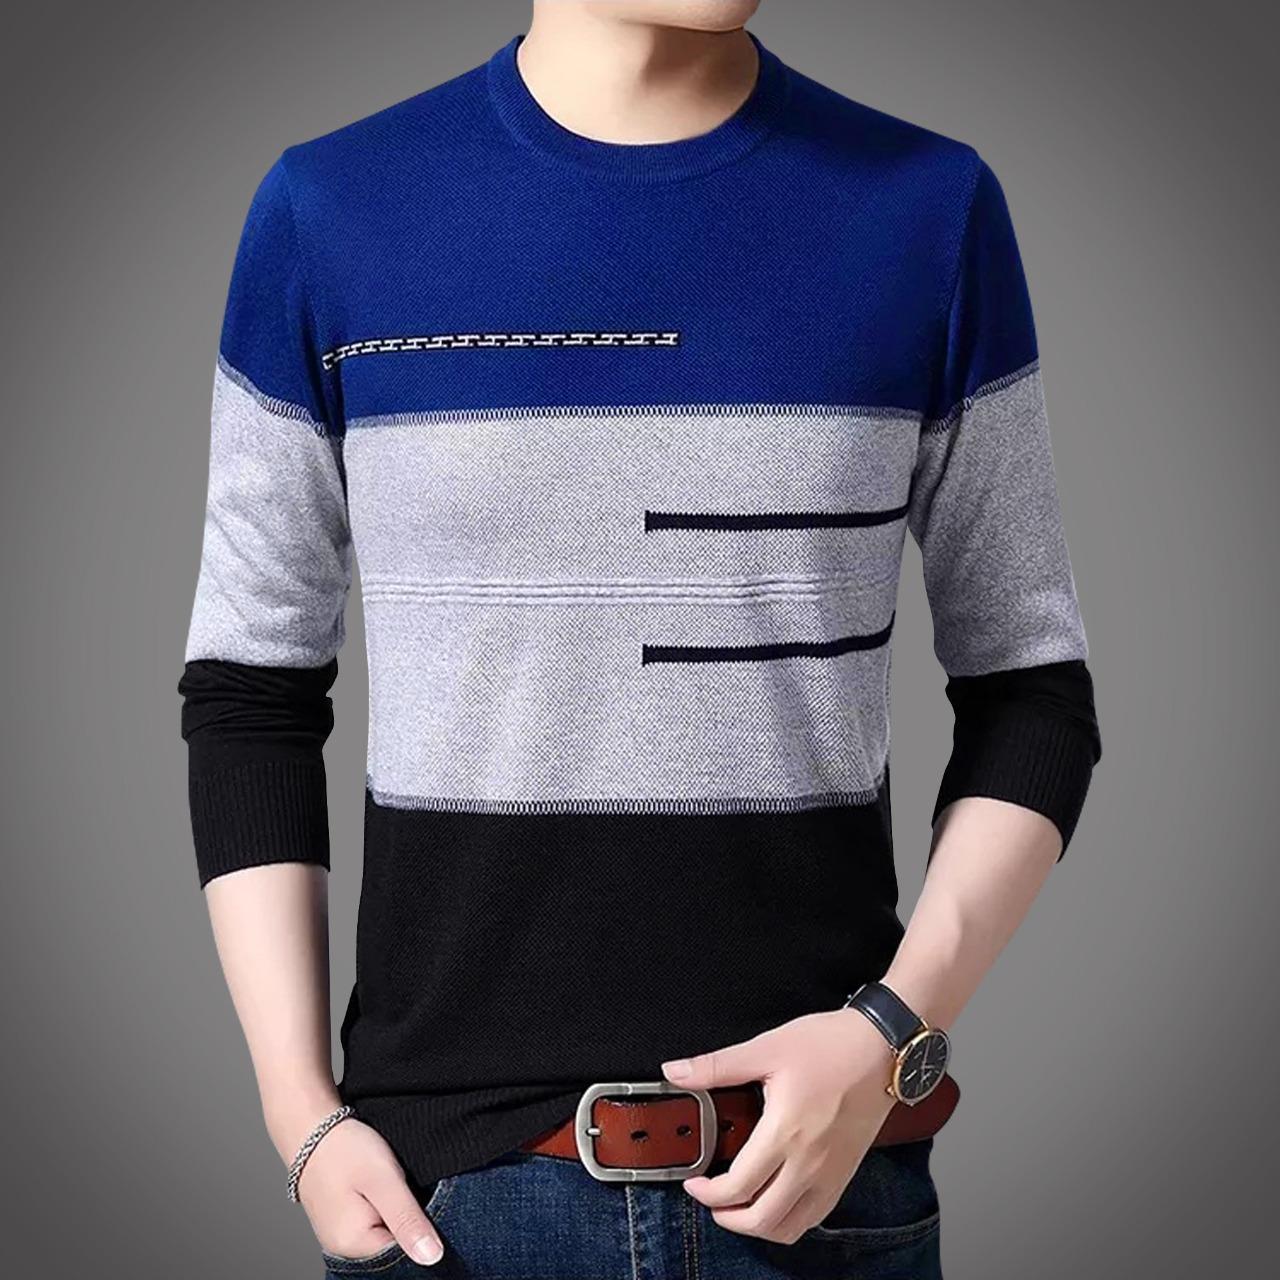 Cotton Full Sleeve Sweater for Men - GMS006